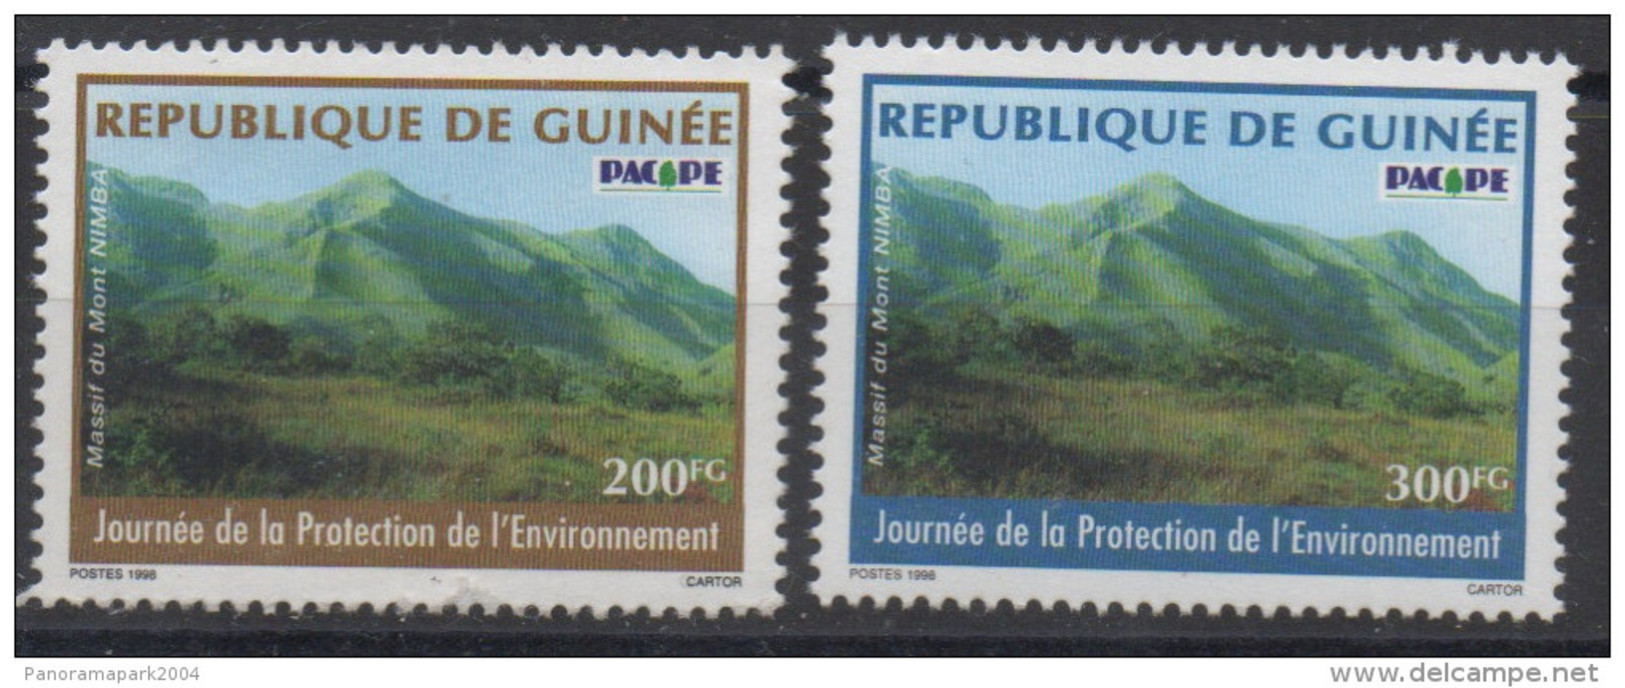 Guinée Guinea 1998 Mi. 2212 (?) Journée De La Protection De L'environnement Umwelt Environmental Protection MontRARE !! - Guinea (1958-...)